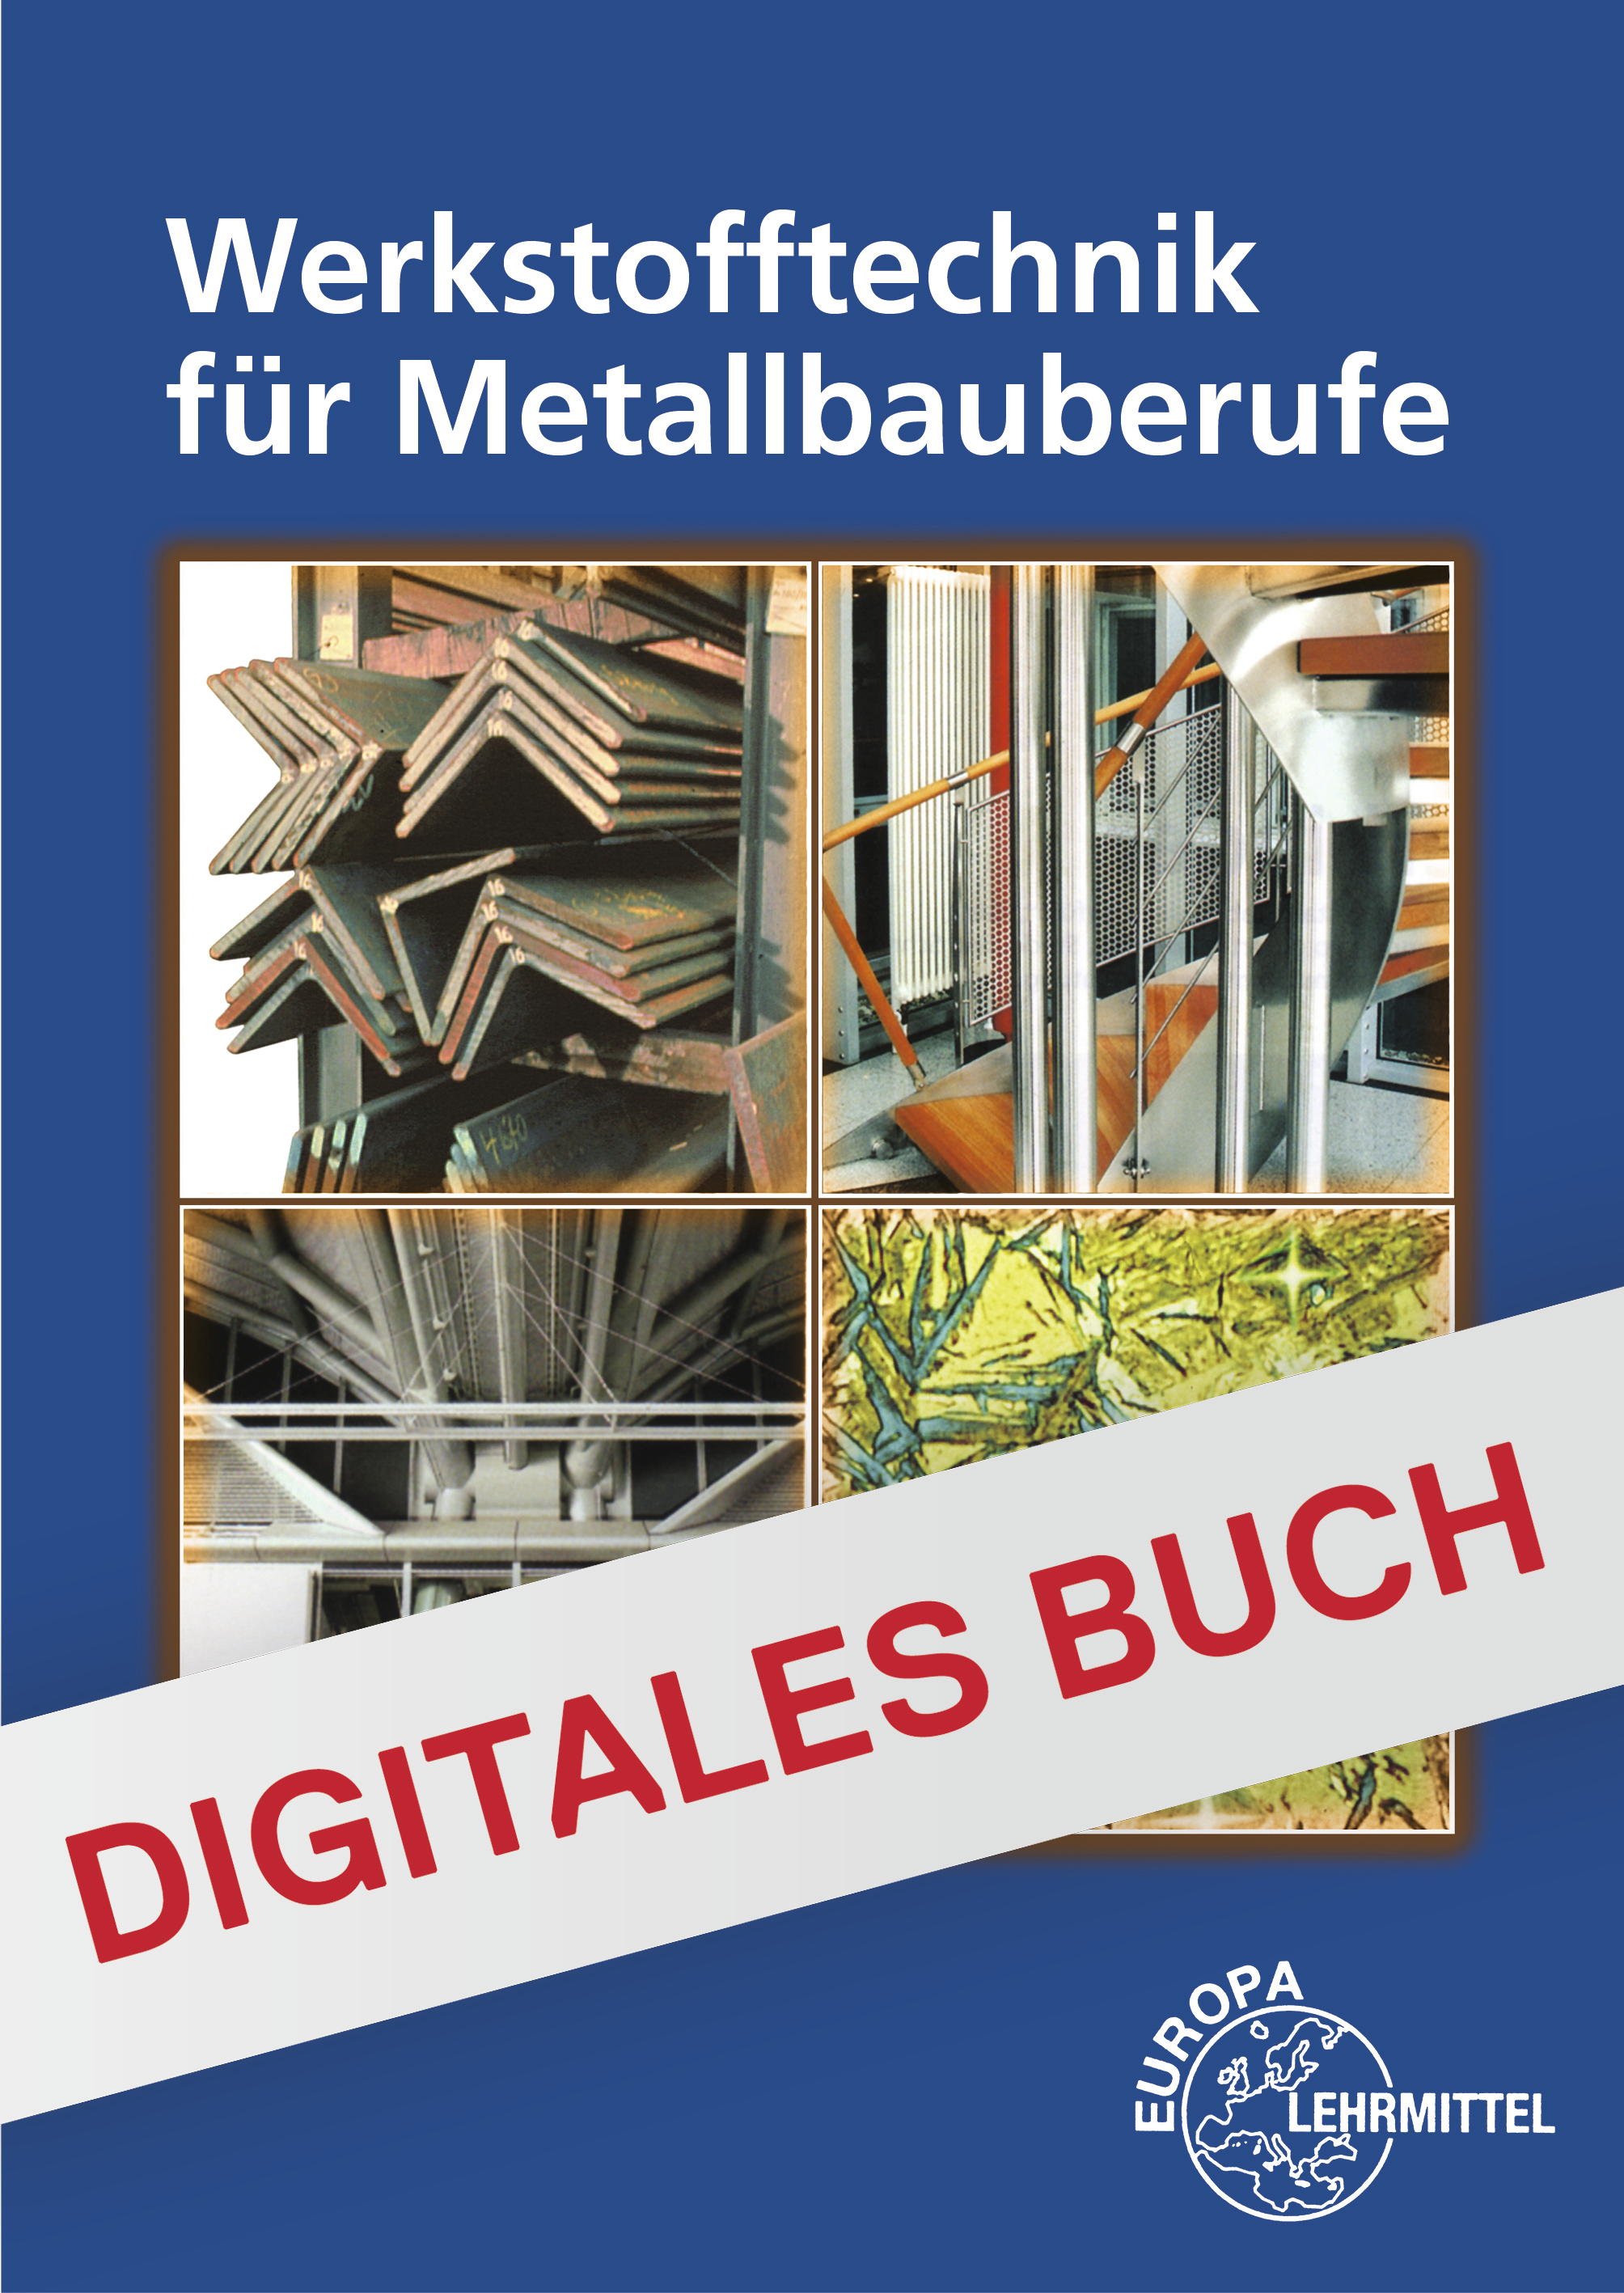 Werkstofftechnik für Metallbauberufe - Digitales Buch